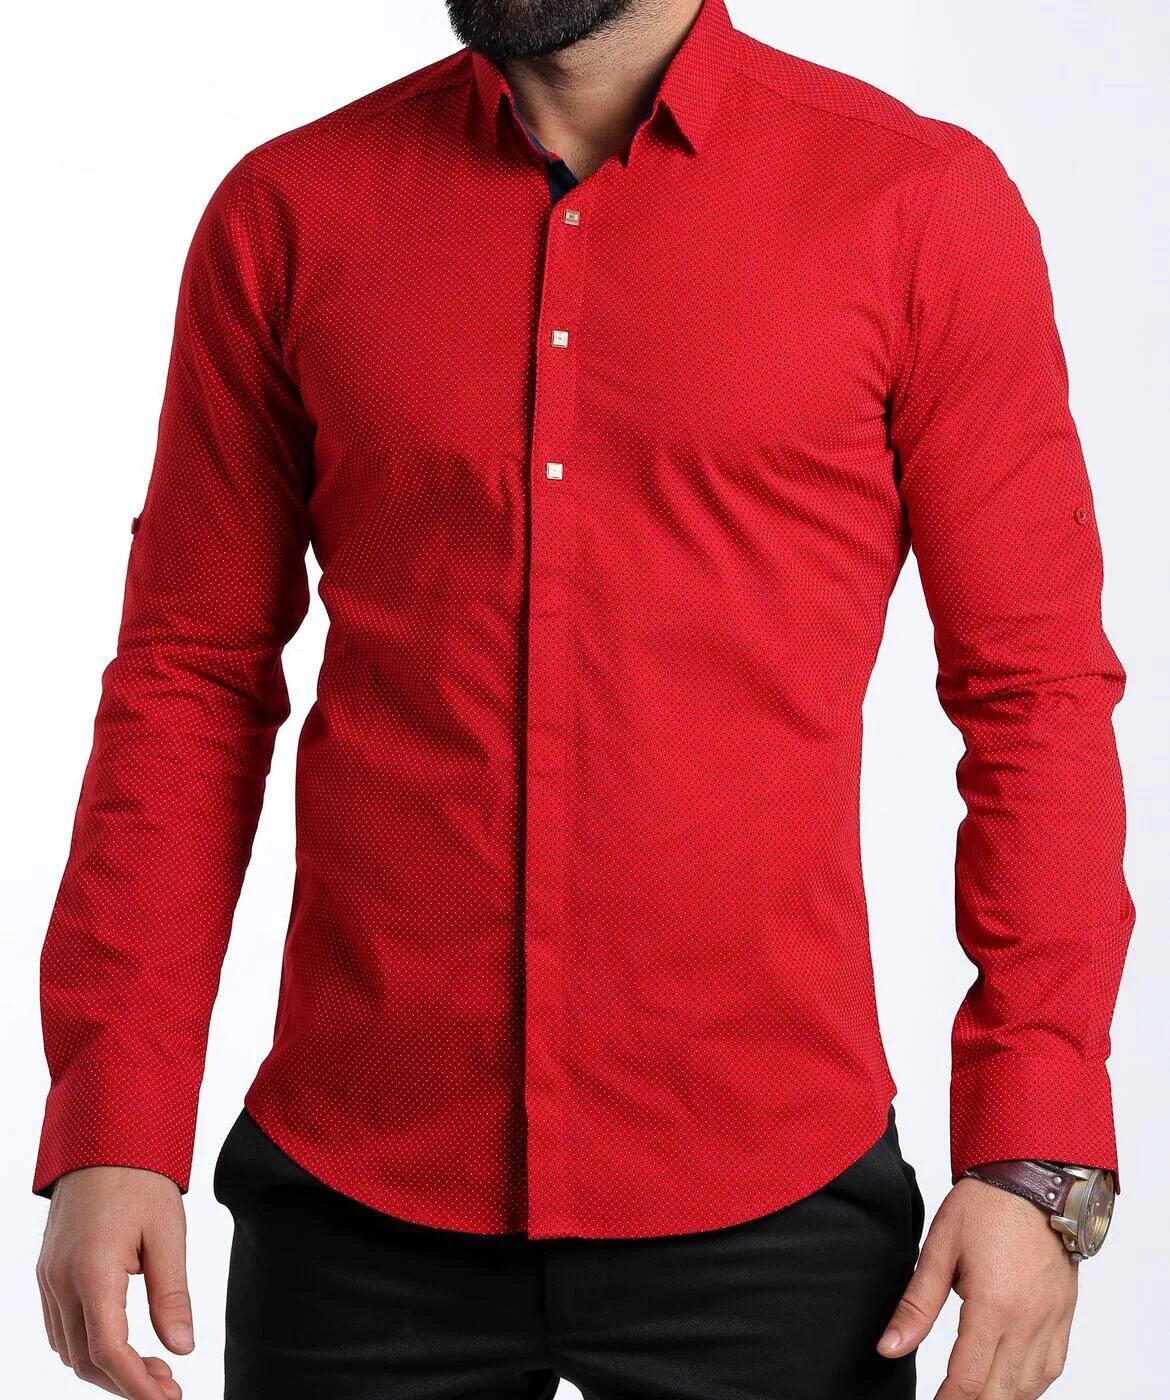 Рубашка мужская красная. Ярко красная рубашка мужская. Красная рубаха мужская. Рубашка мужская с длинным рукавом красная. Мужская рубашка 52 размер